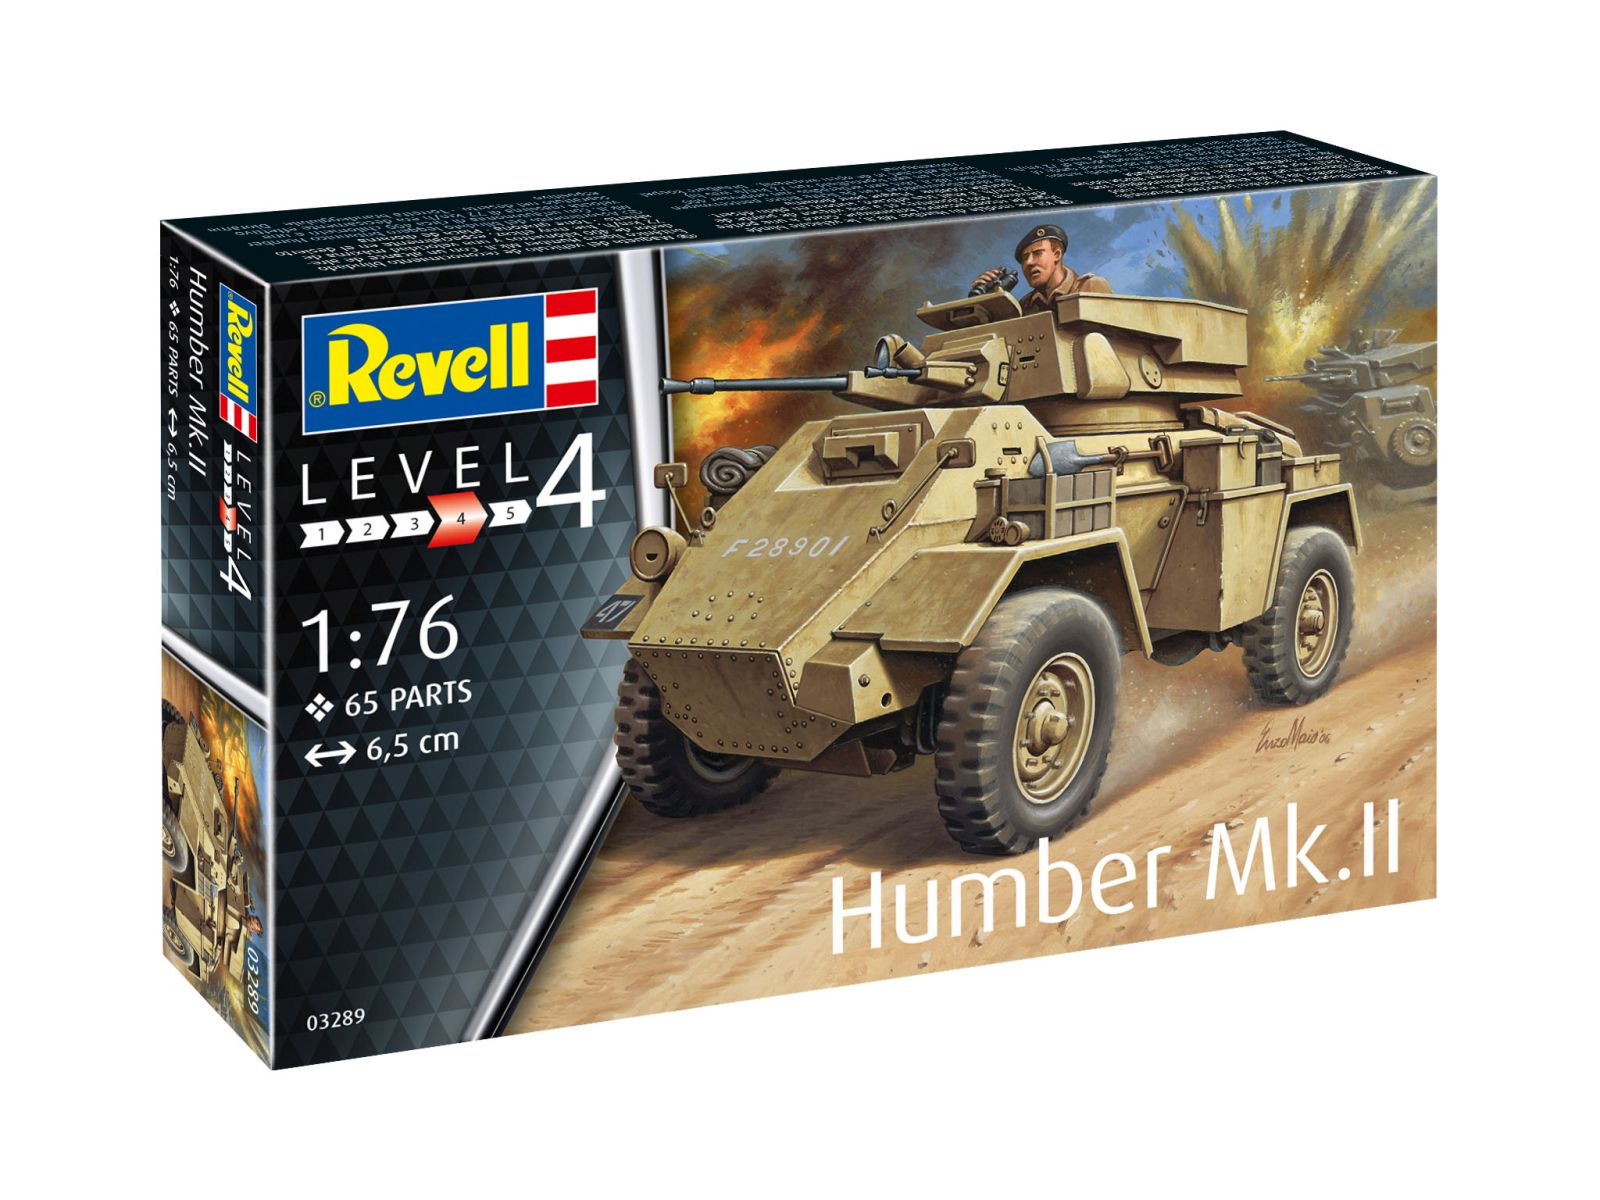 Revell 03289 - Humber Mk.II